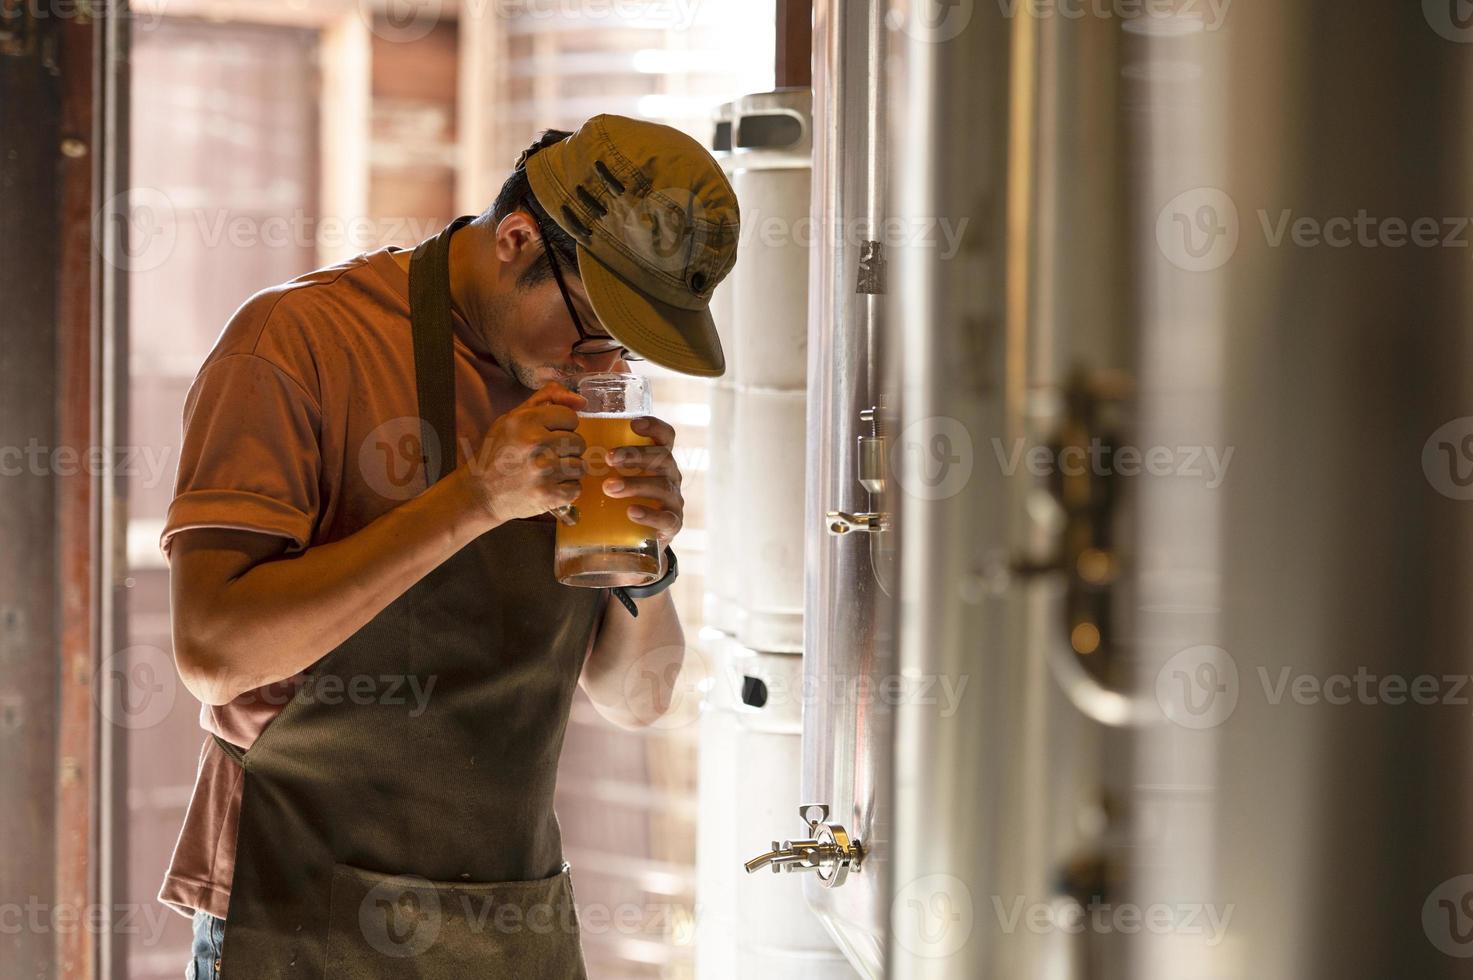 un joven trabaja en una cervecería y verifica la calidad de la cerveza artesanal. el dueño de la cervecería degusta las mejores cervezas de bach. el atajo de un hombre llena un vaso de cerveza con foto